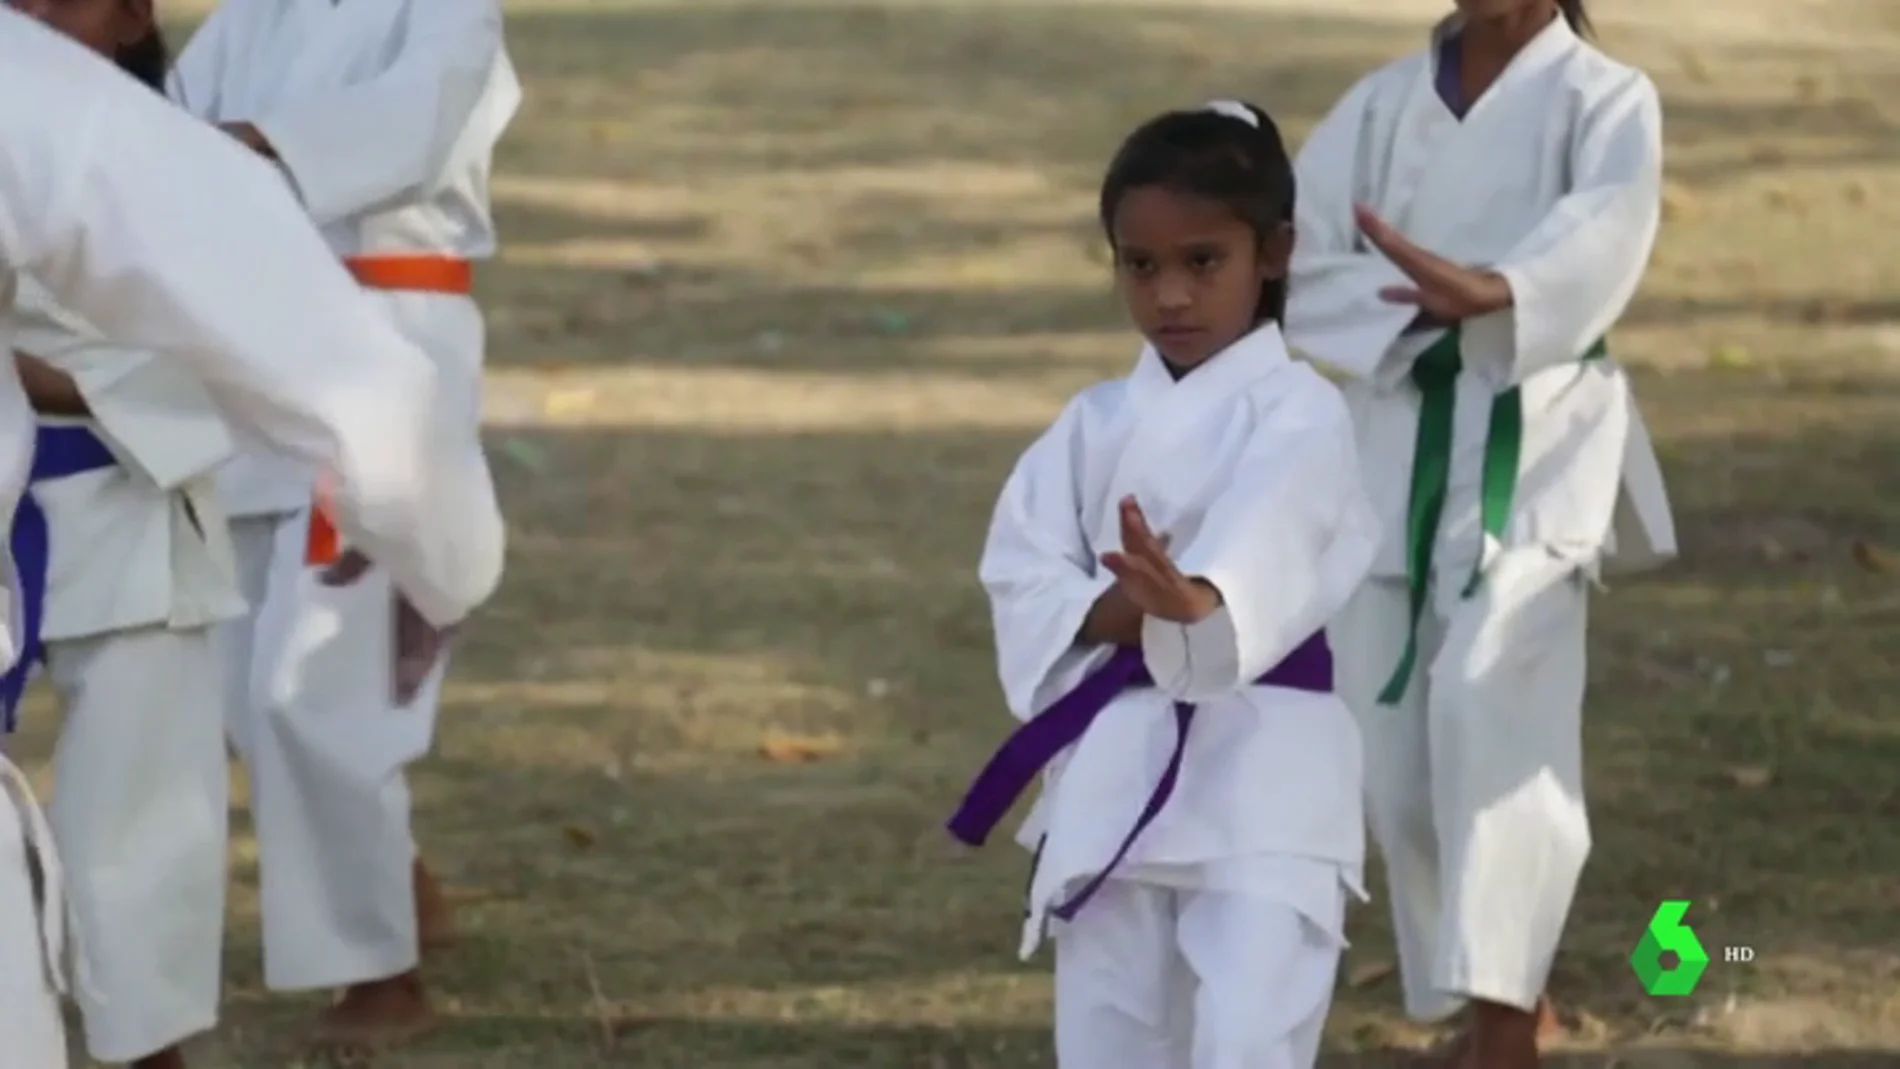 Niñas reciben clases de kárate en la India para defenderse del acoso